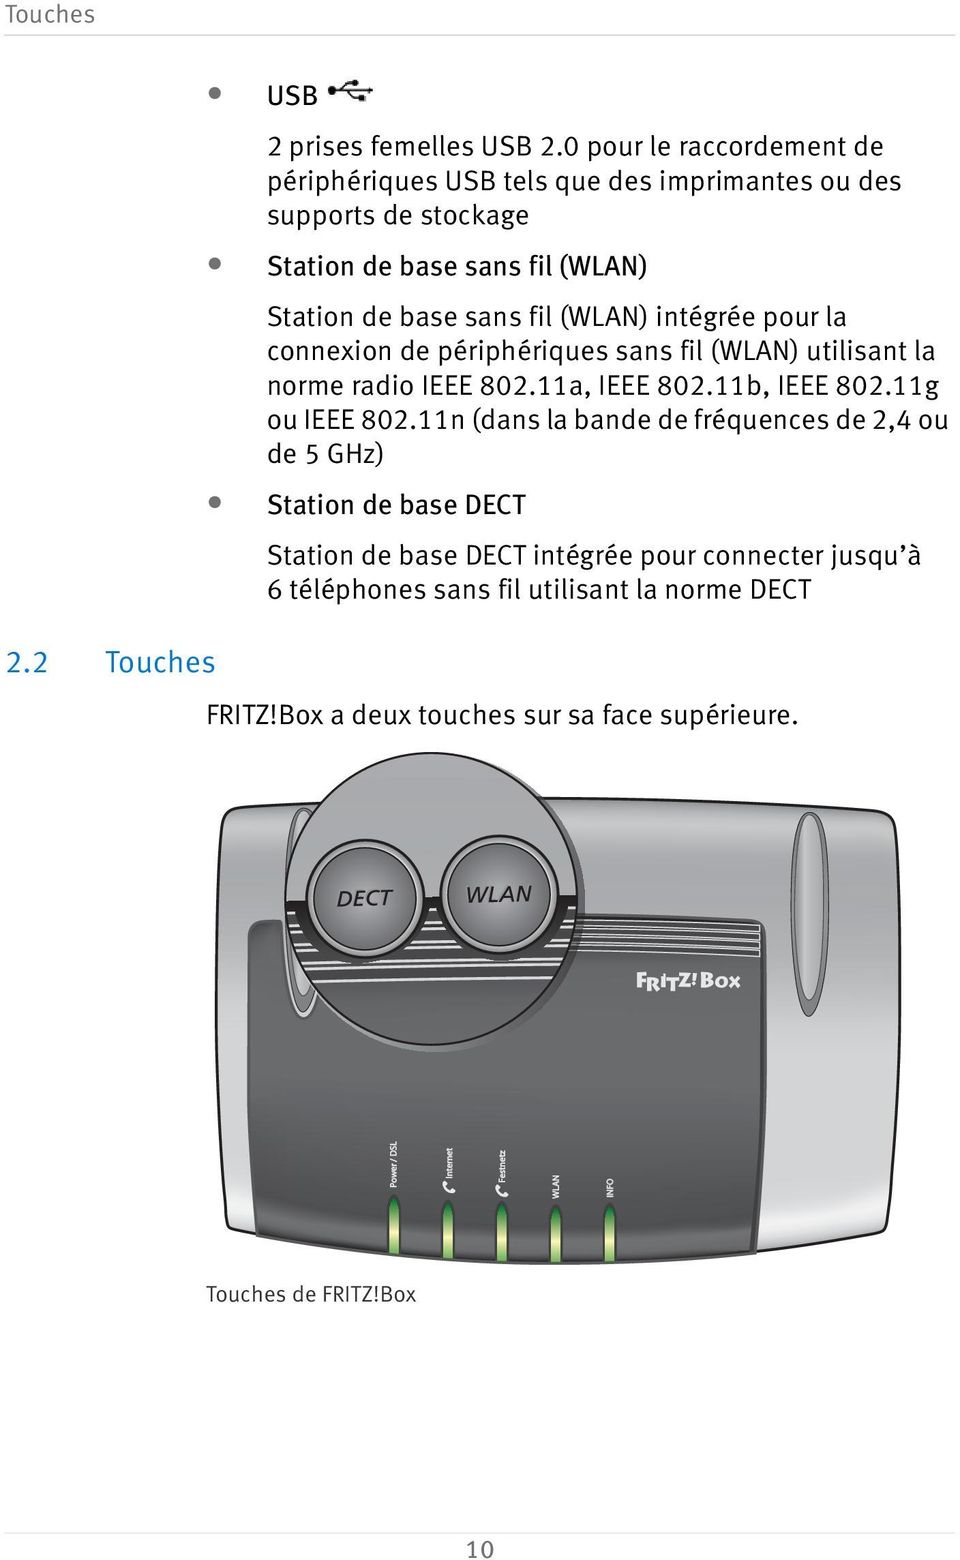 (WLAN) intégrée pour la connexion de périphériques sans fil (WLAN) utilisant la norme radio IEEE 802.11a, IEEE 802.11b, IEEE 802.11g ou IEEE 802.